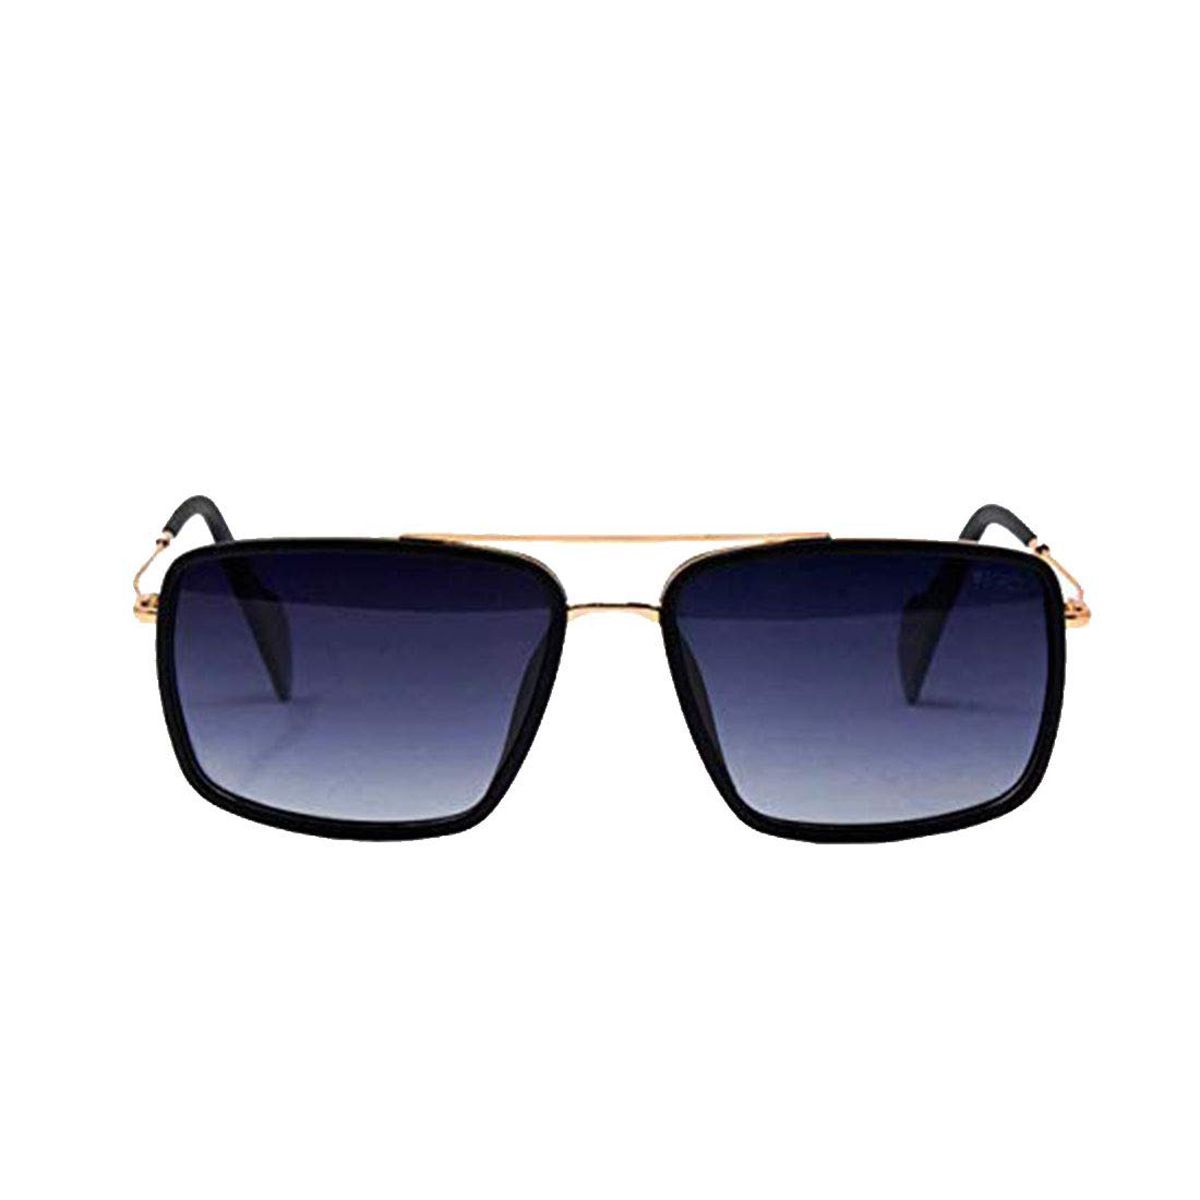 Enrico Black Polycarbonate Square Snapper Men's Sunglasses